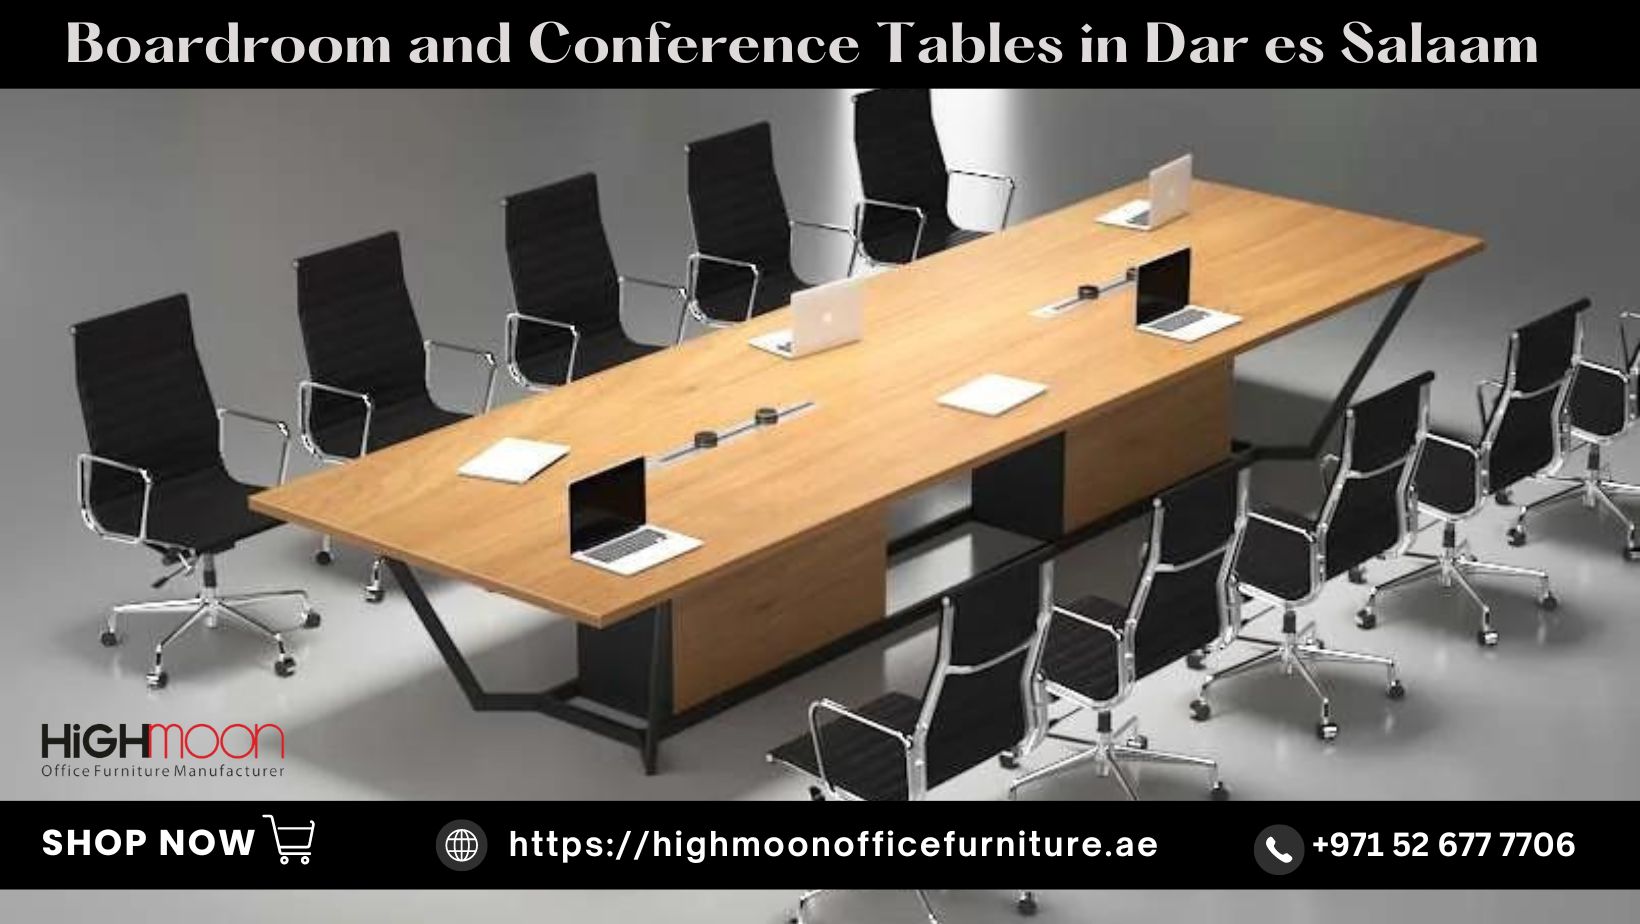 Boardroom and Conference Tables in Dar es Salaam